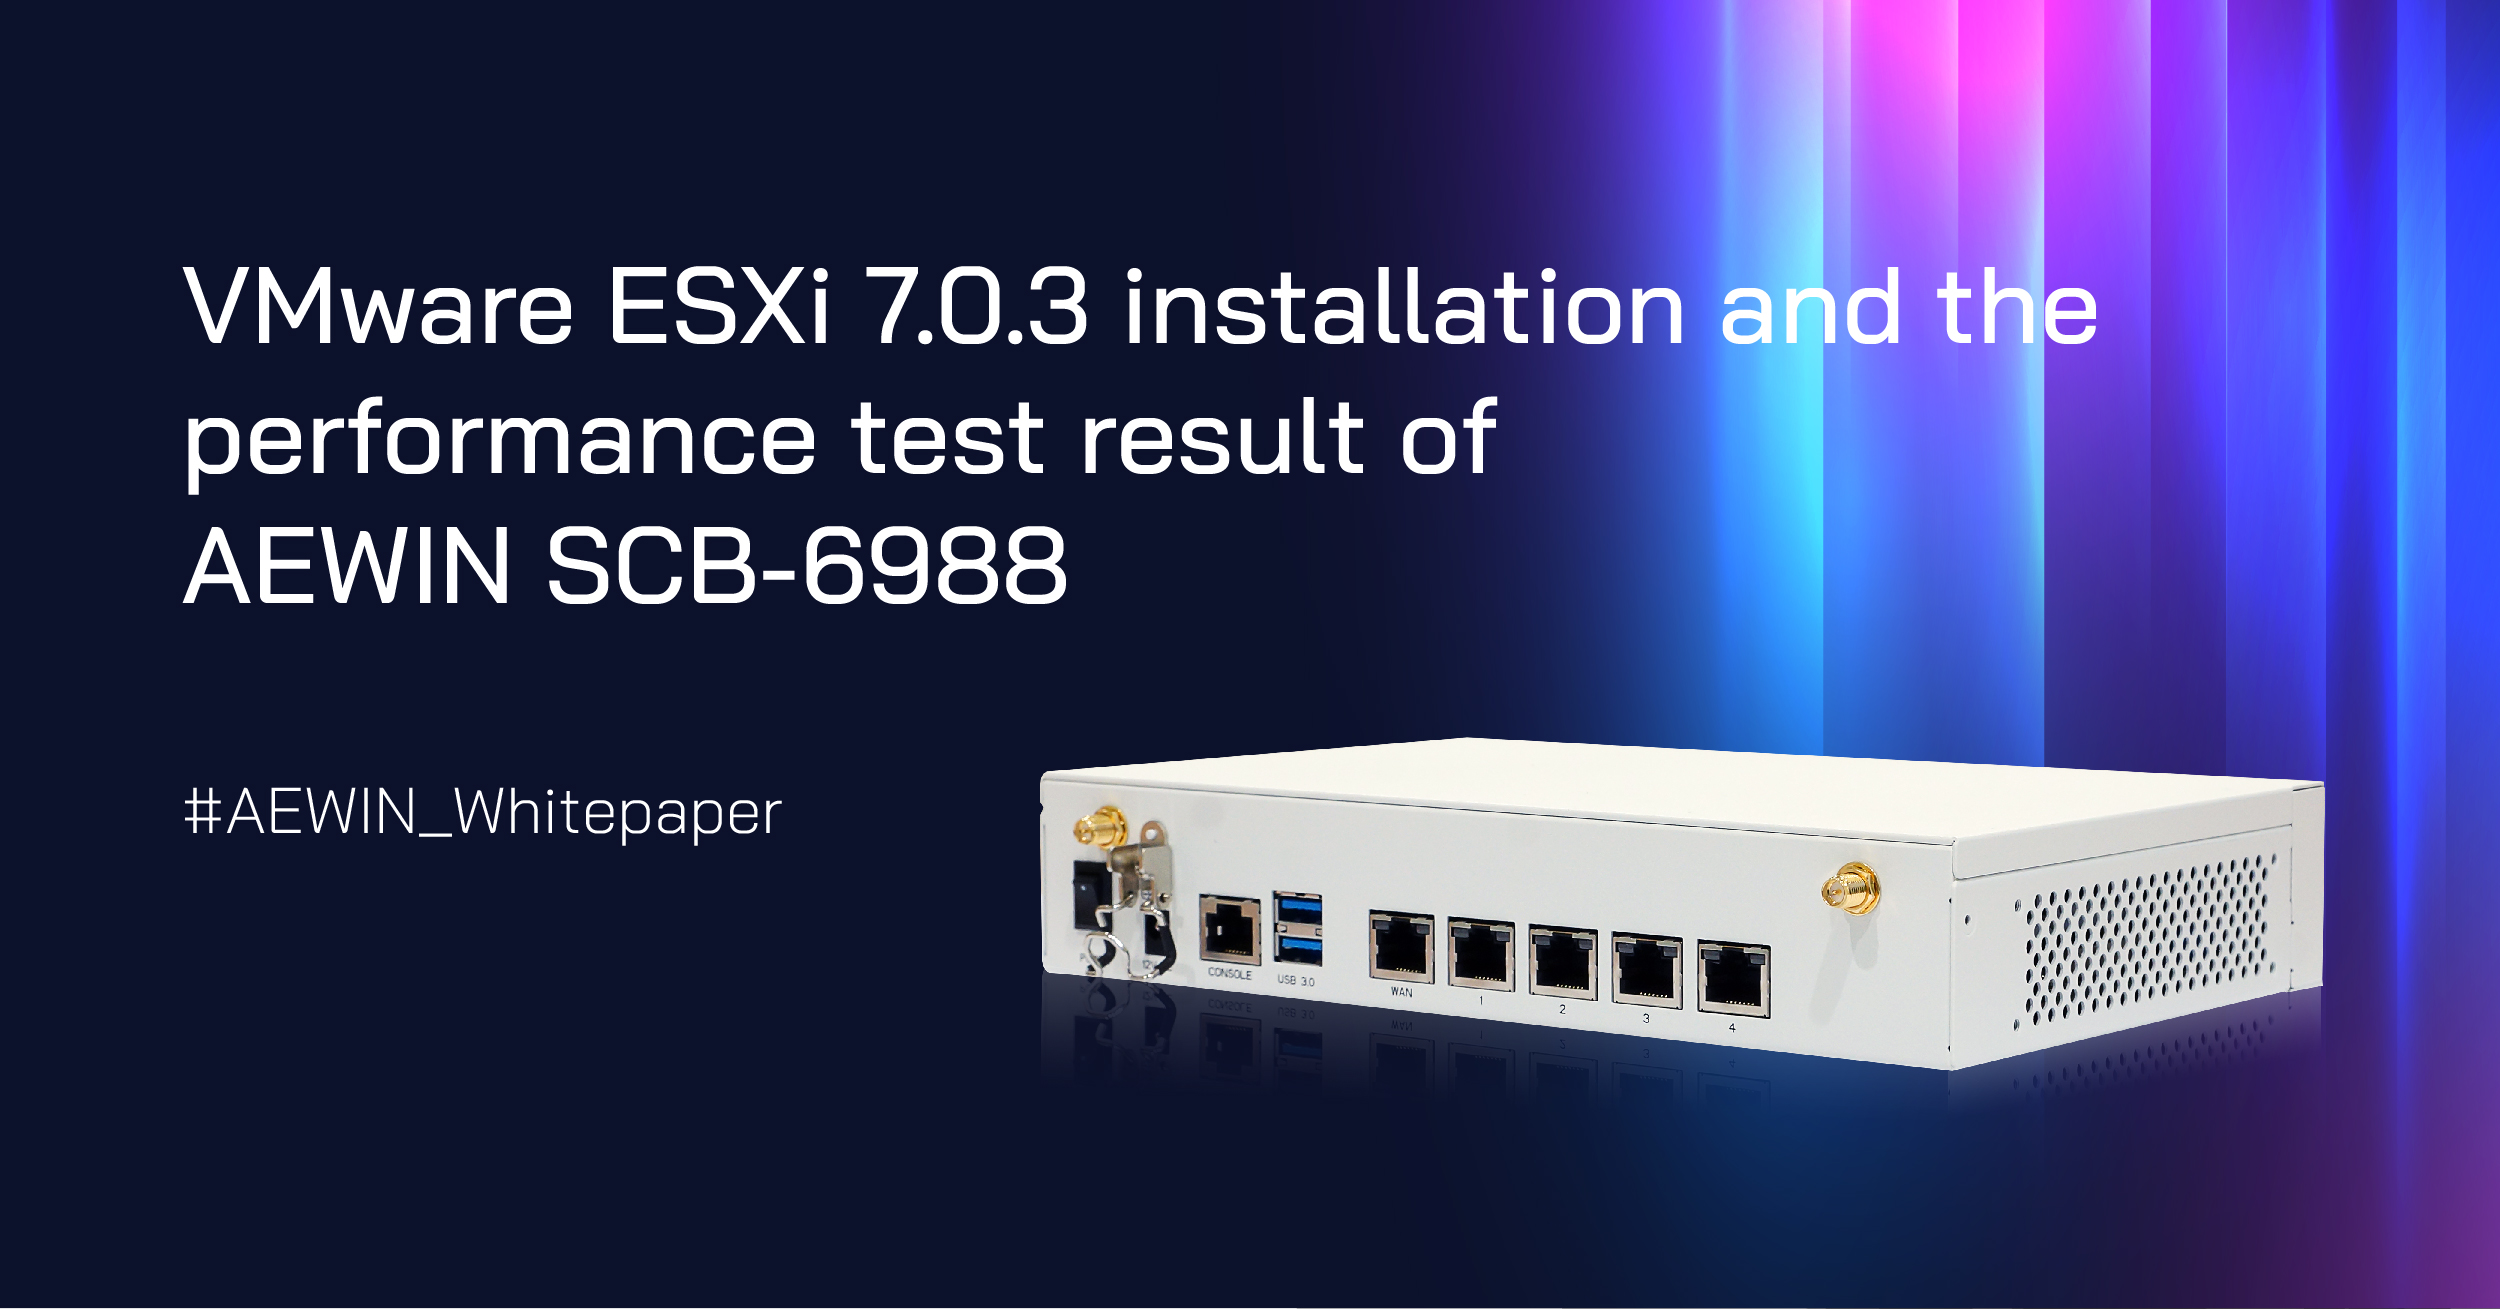 VMware ESXi 7.0.3 installation on SCB-6988